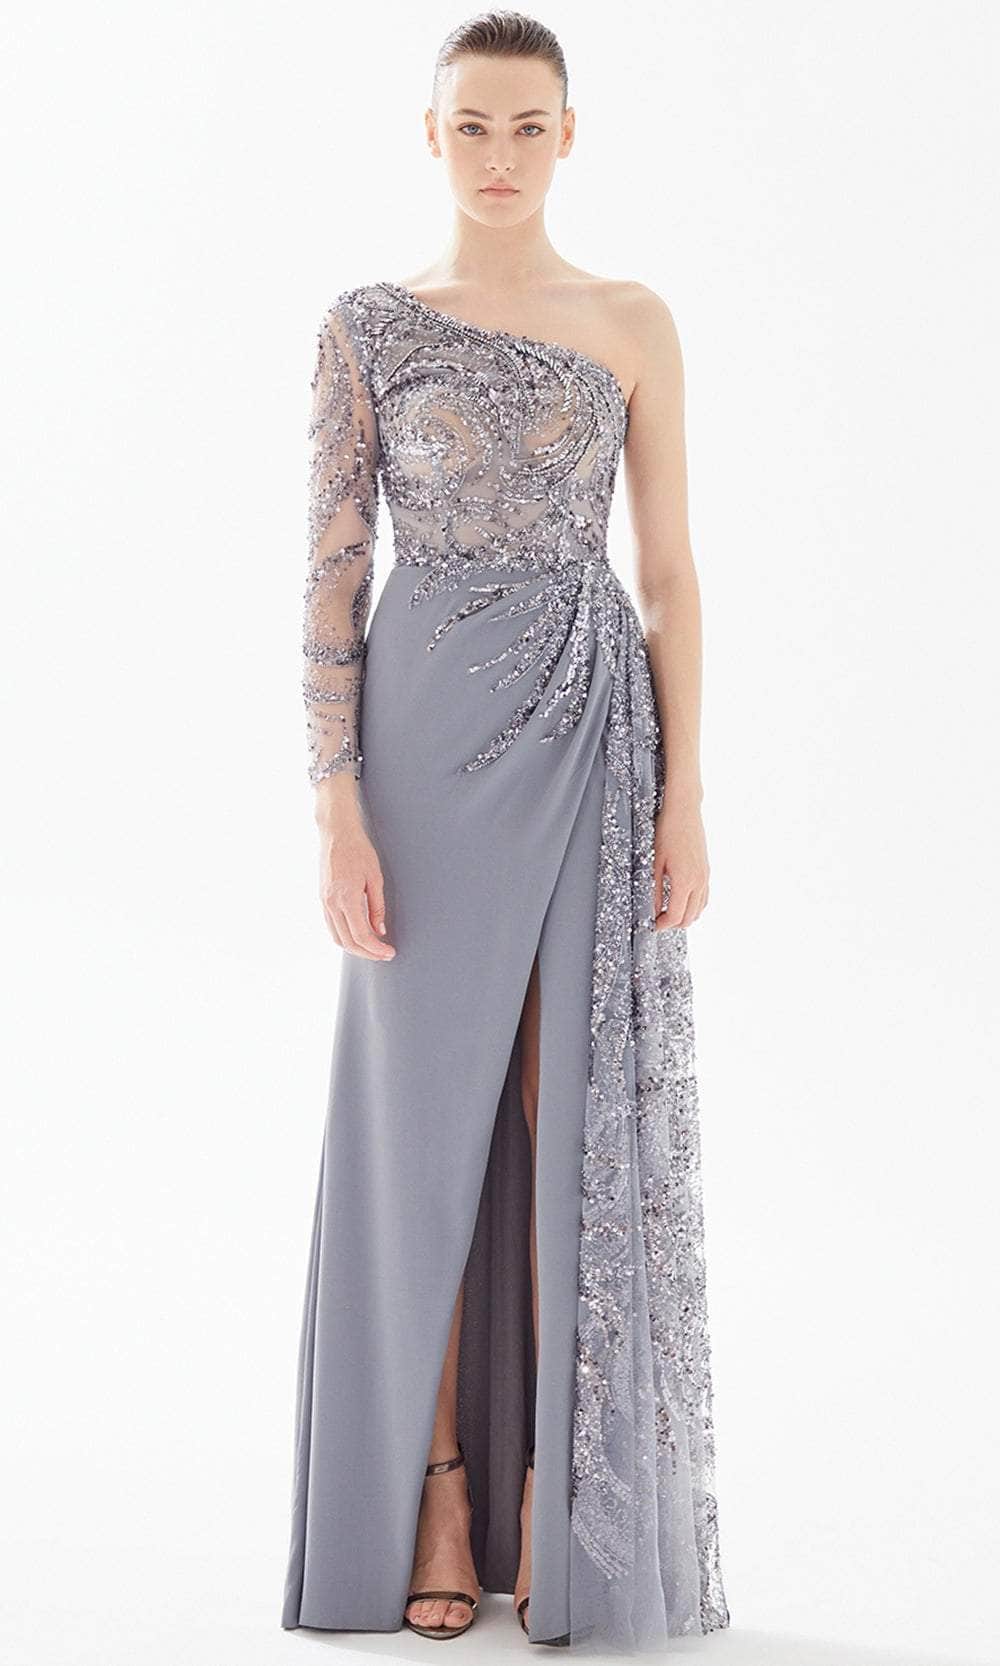 Tarik Ediz 98290 - Glimmer Illusion Bodice Evening Gown
